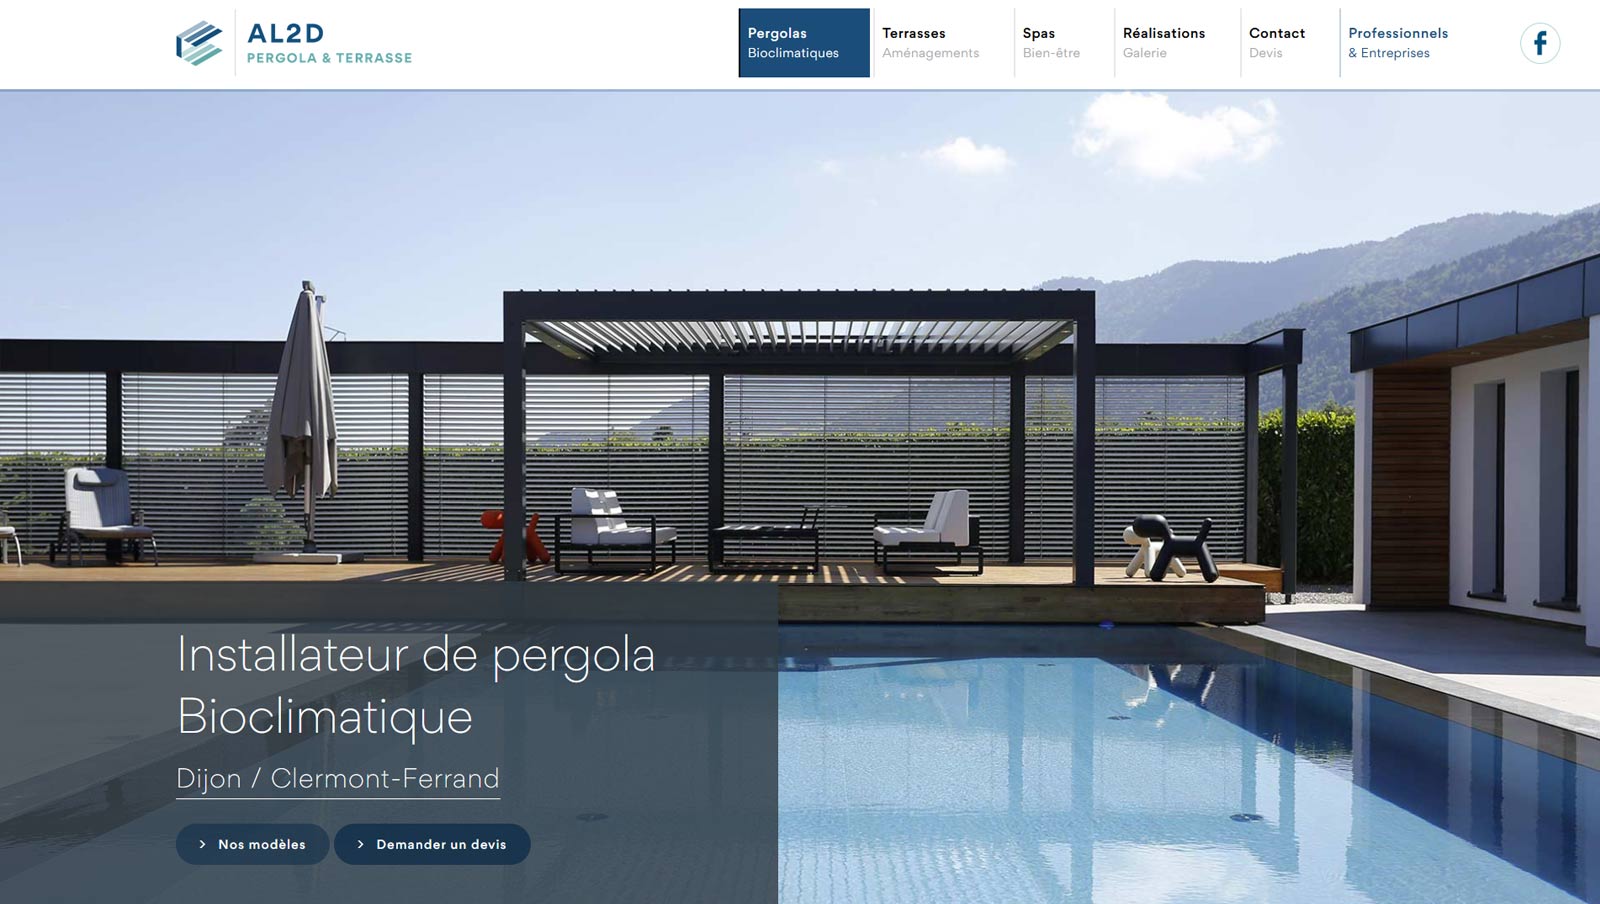 Création site internet vitrine : webdesign et développement pour Pergola et Terrasse, distributeur officiel Biossun par Hervé Augoyat